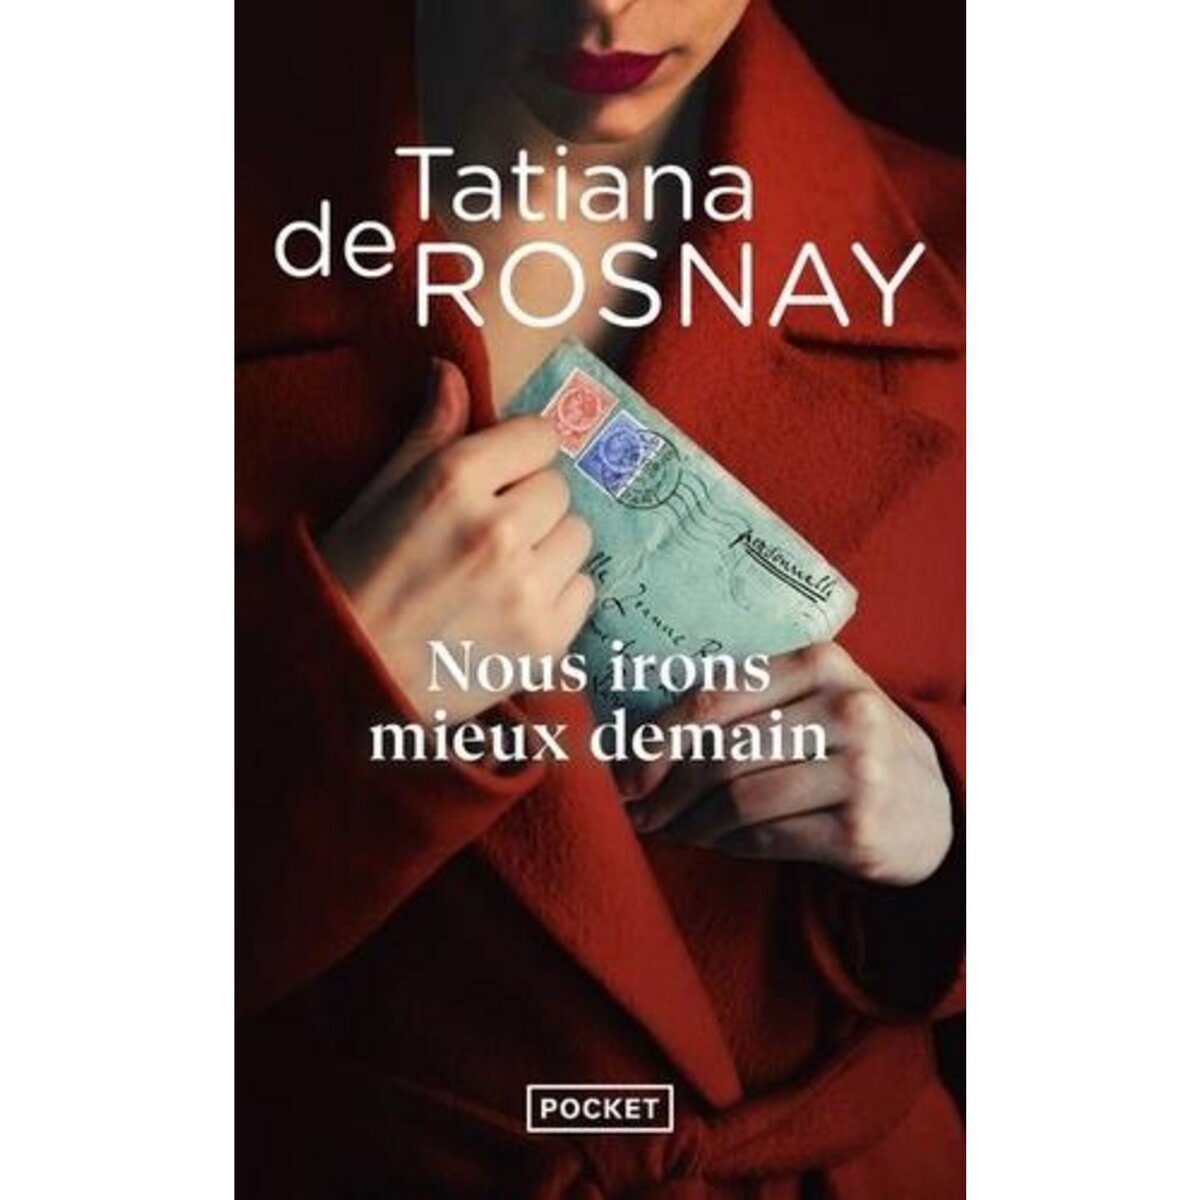  NOUS IRONS MIEUX DEMAIN, Rosnay Tatiana de